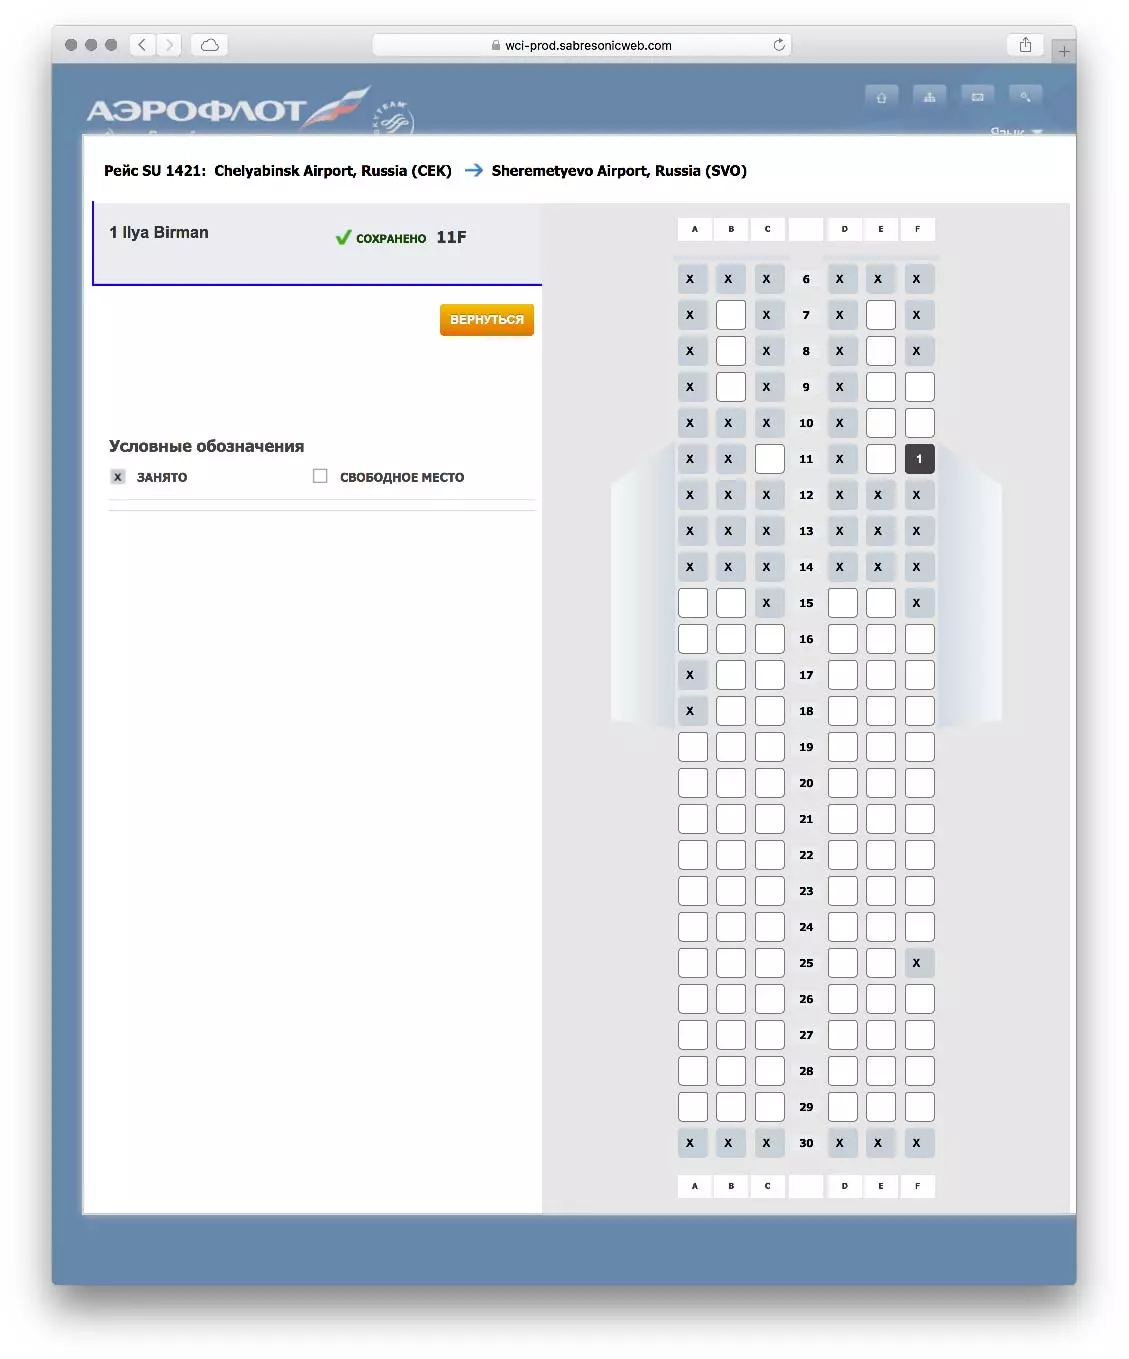 Регистрация на рейсы авиакомпаний, самолеты онлайн. все авиакомпании.